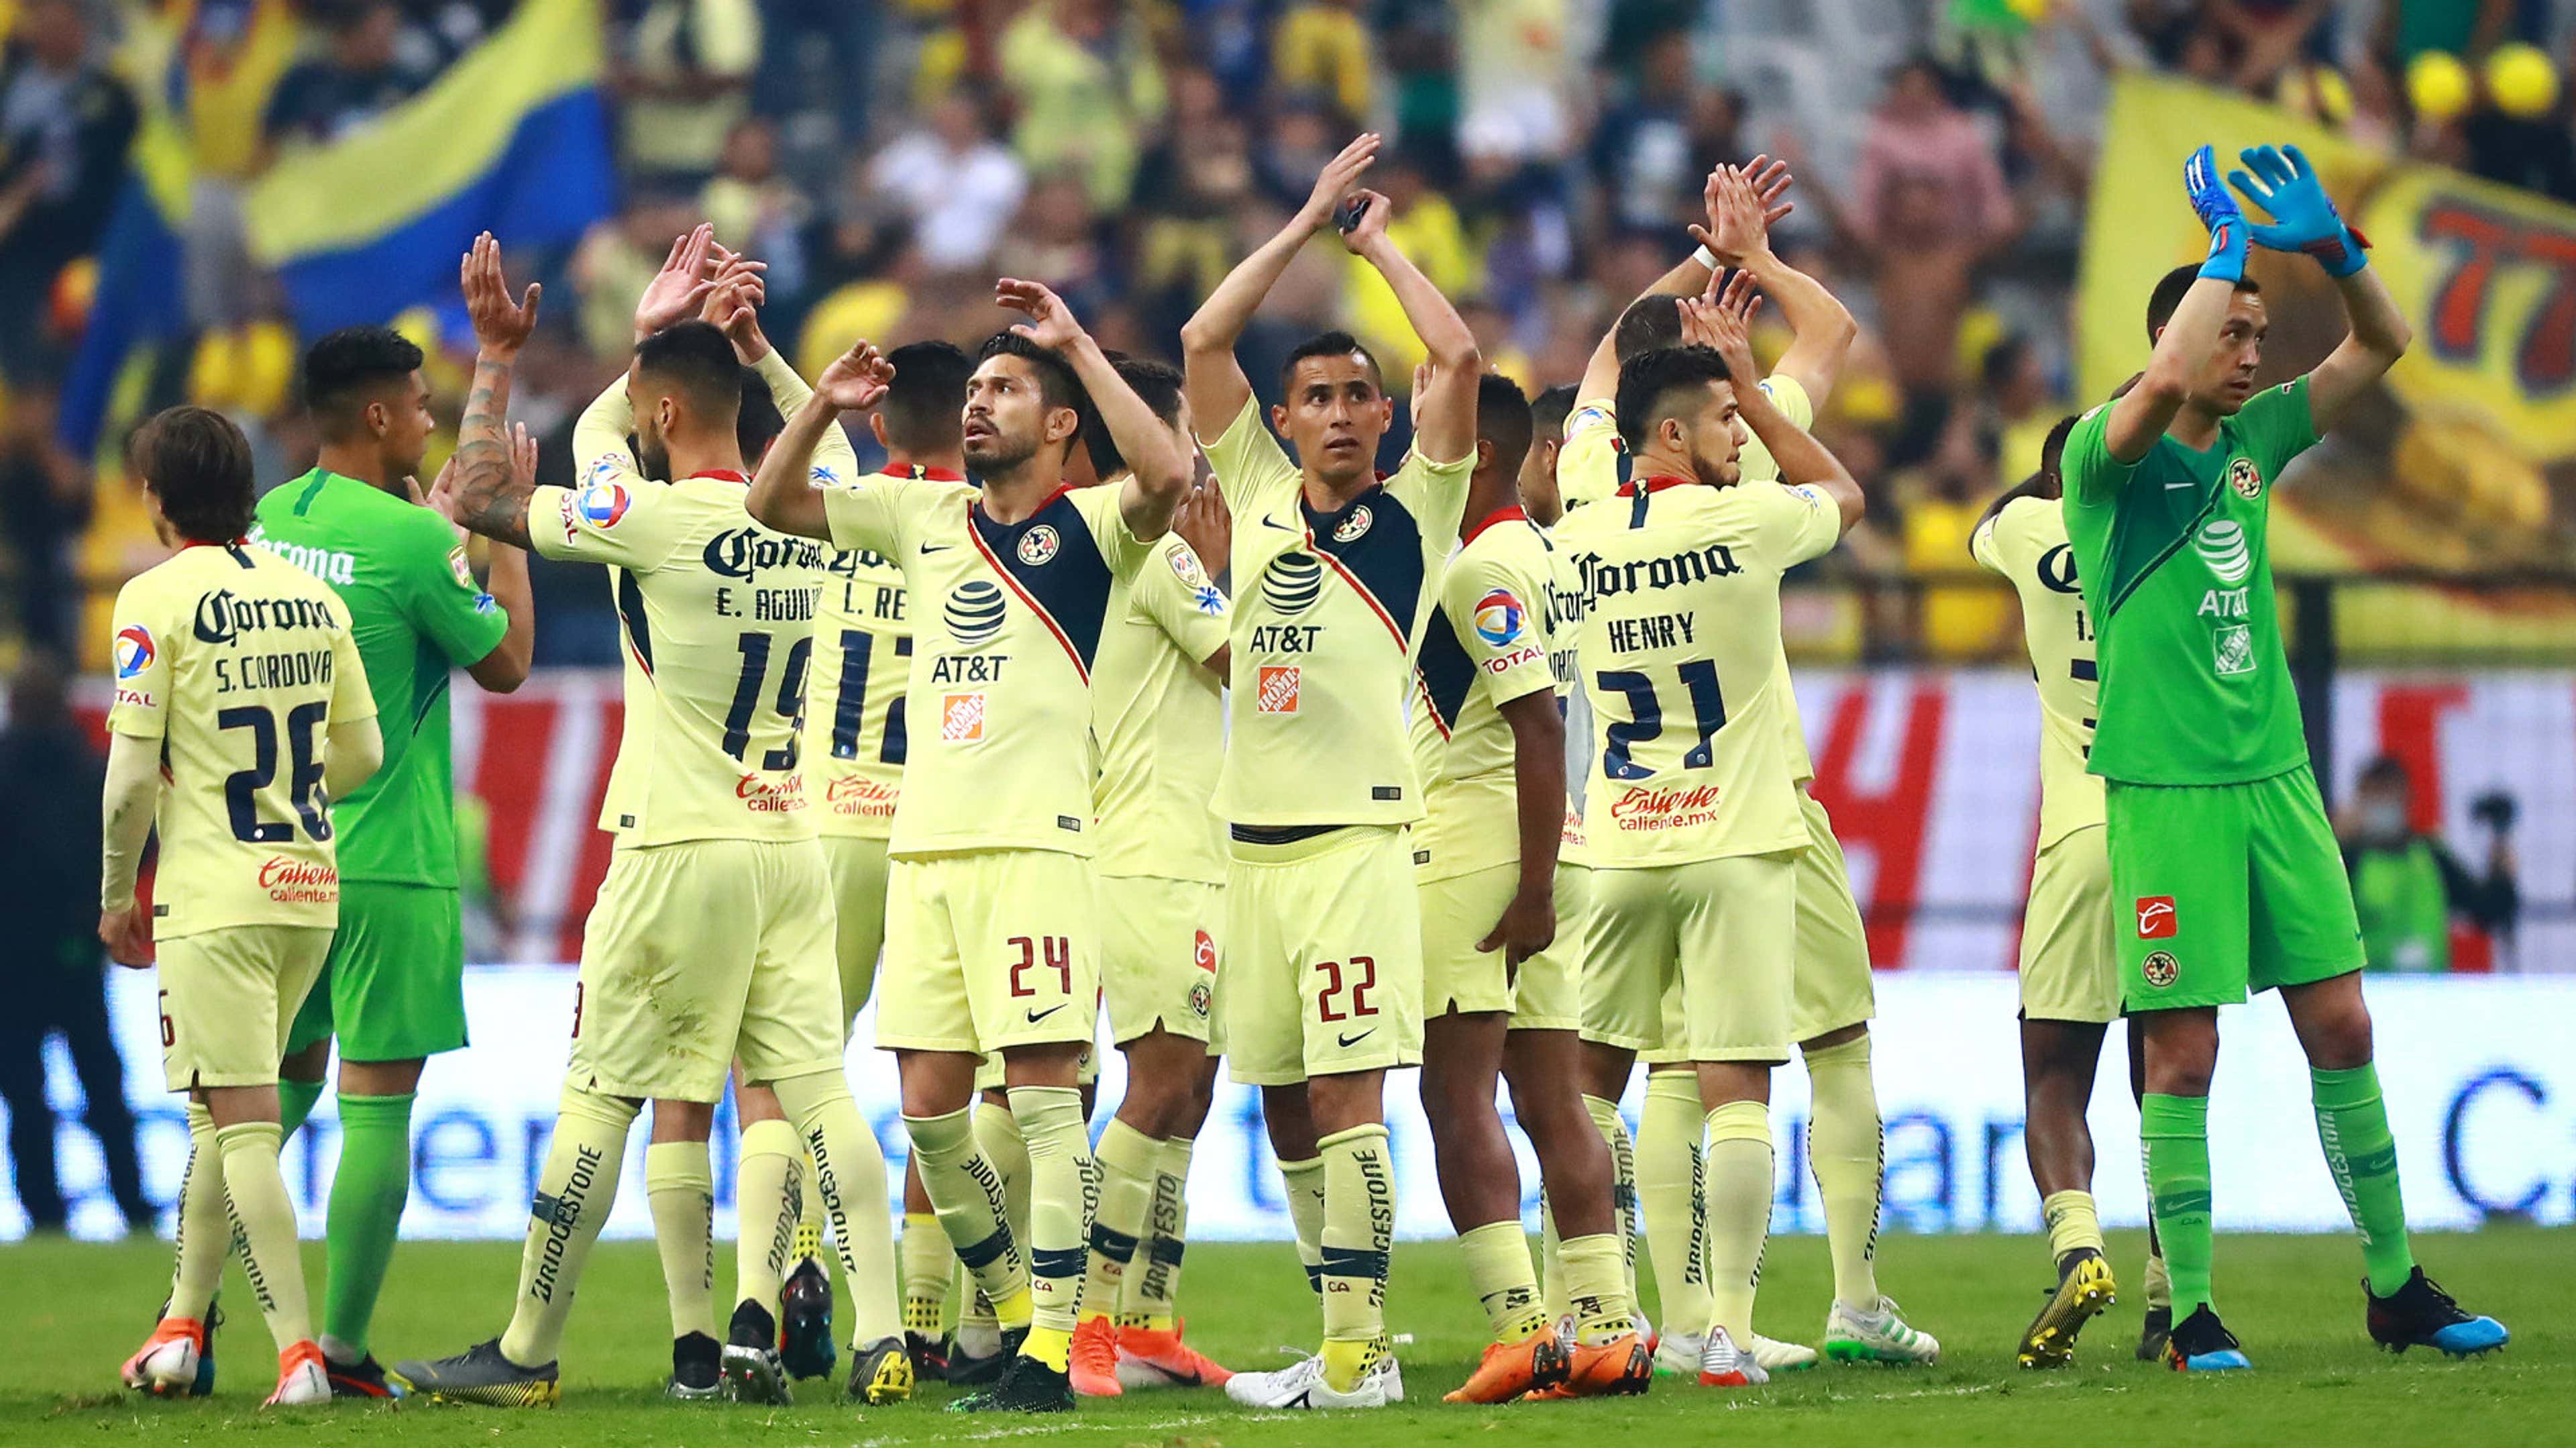 Es América el equipo más ganador del futbol mexicano en los últimos 20 años  - Etcétera